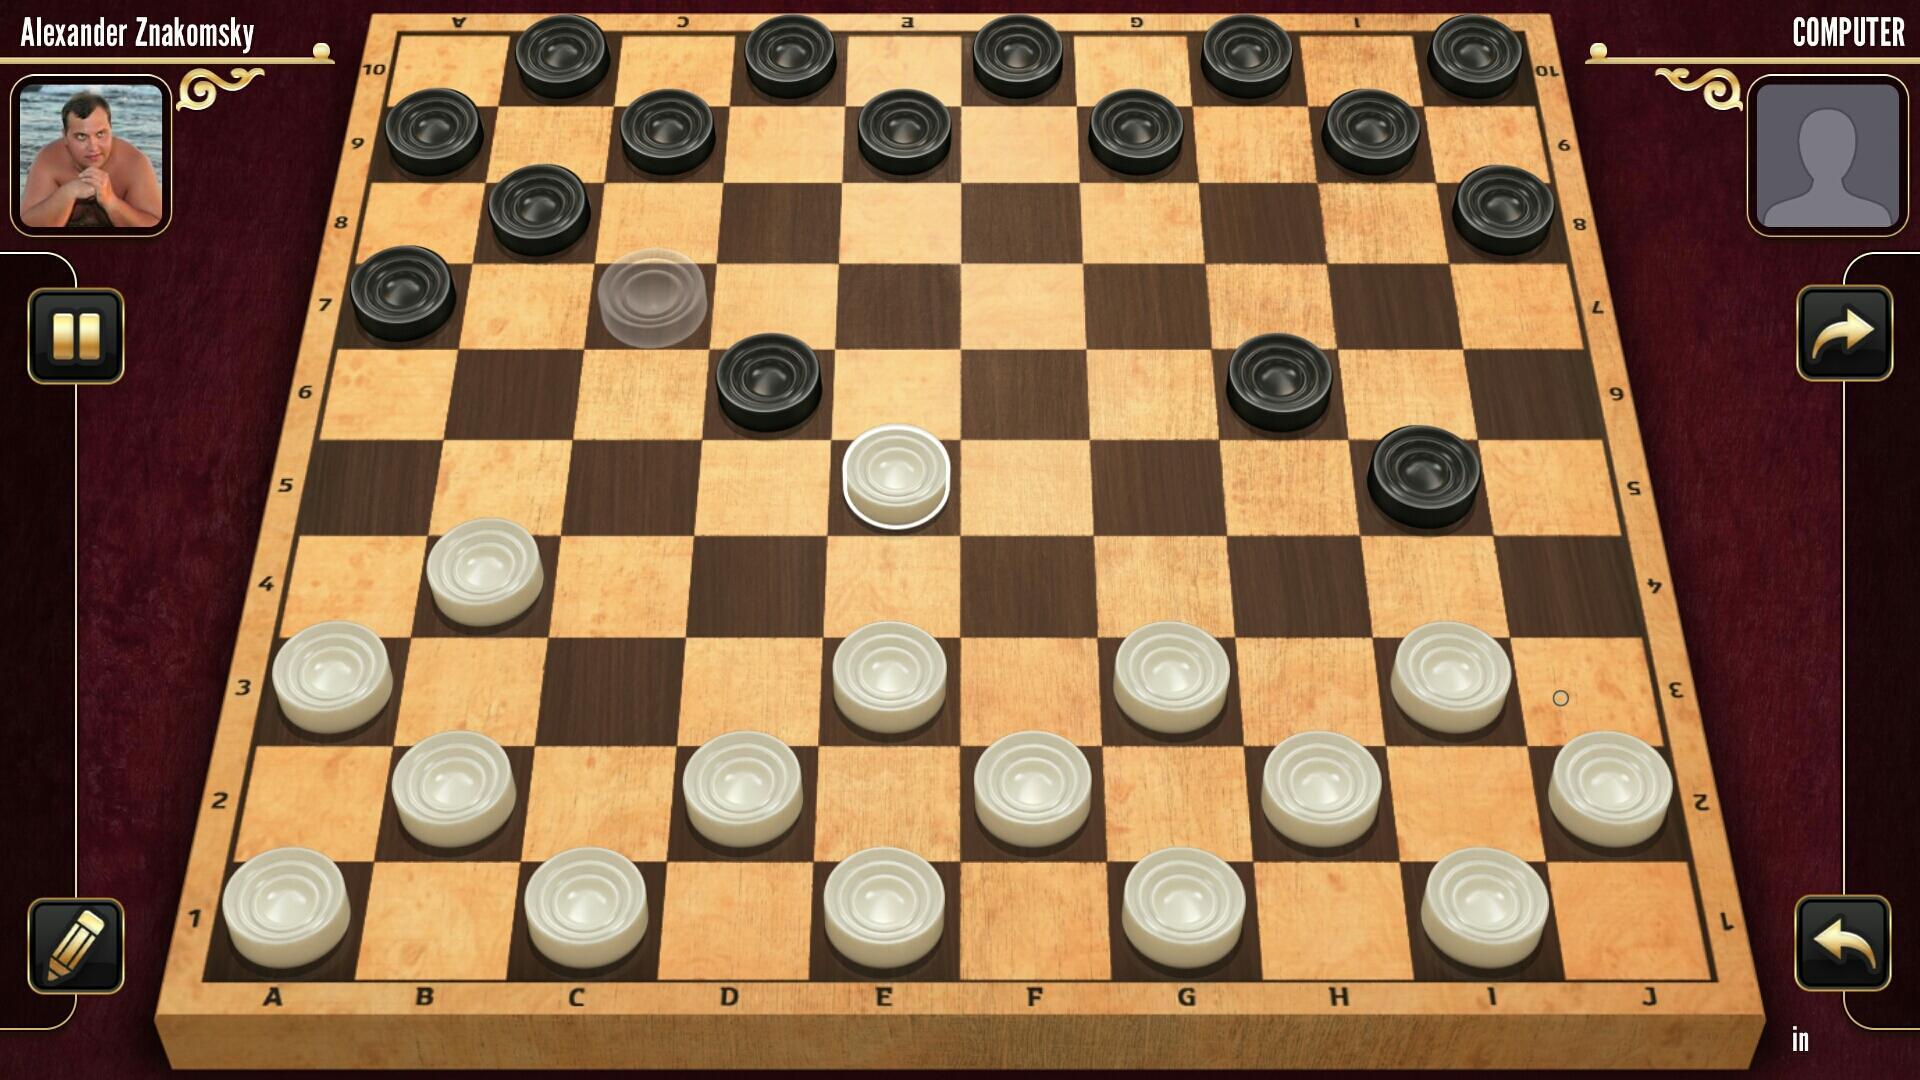 Игра в шашки одной шашкой